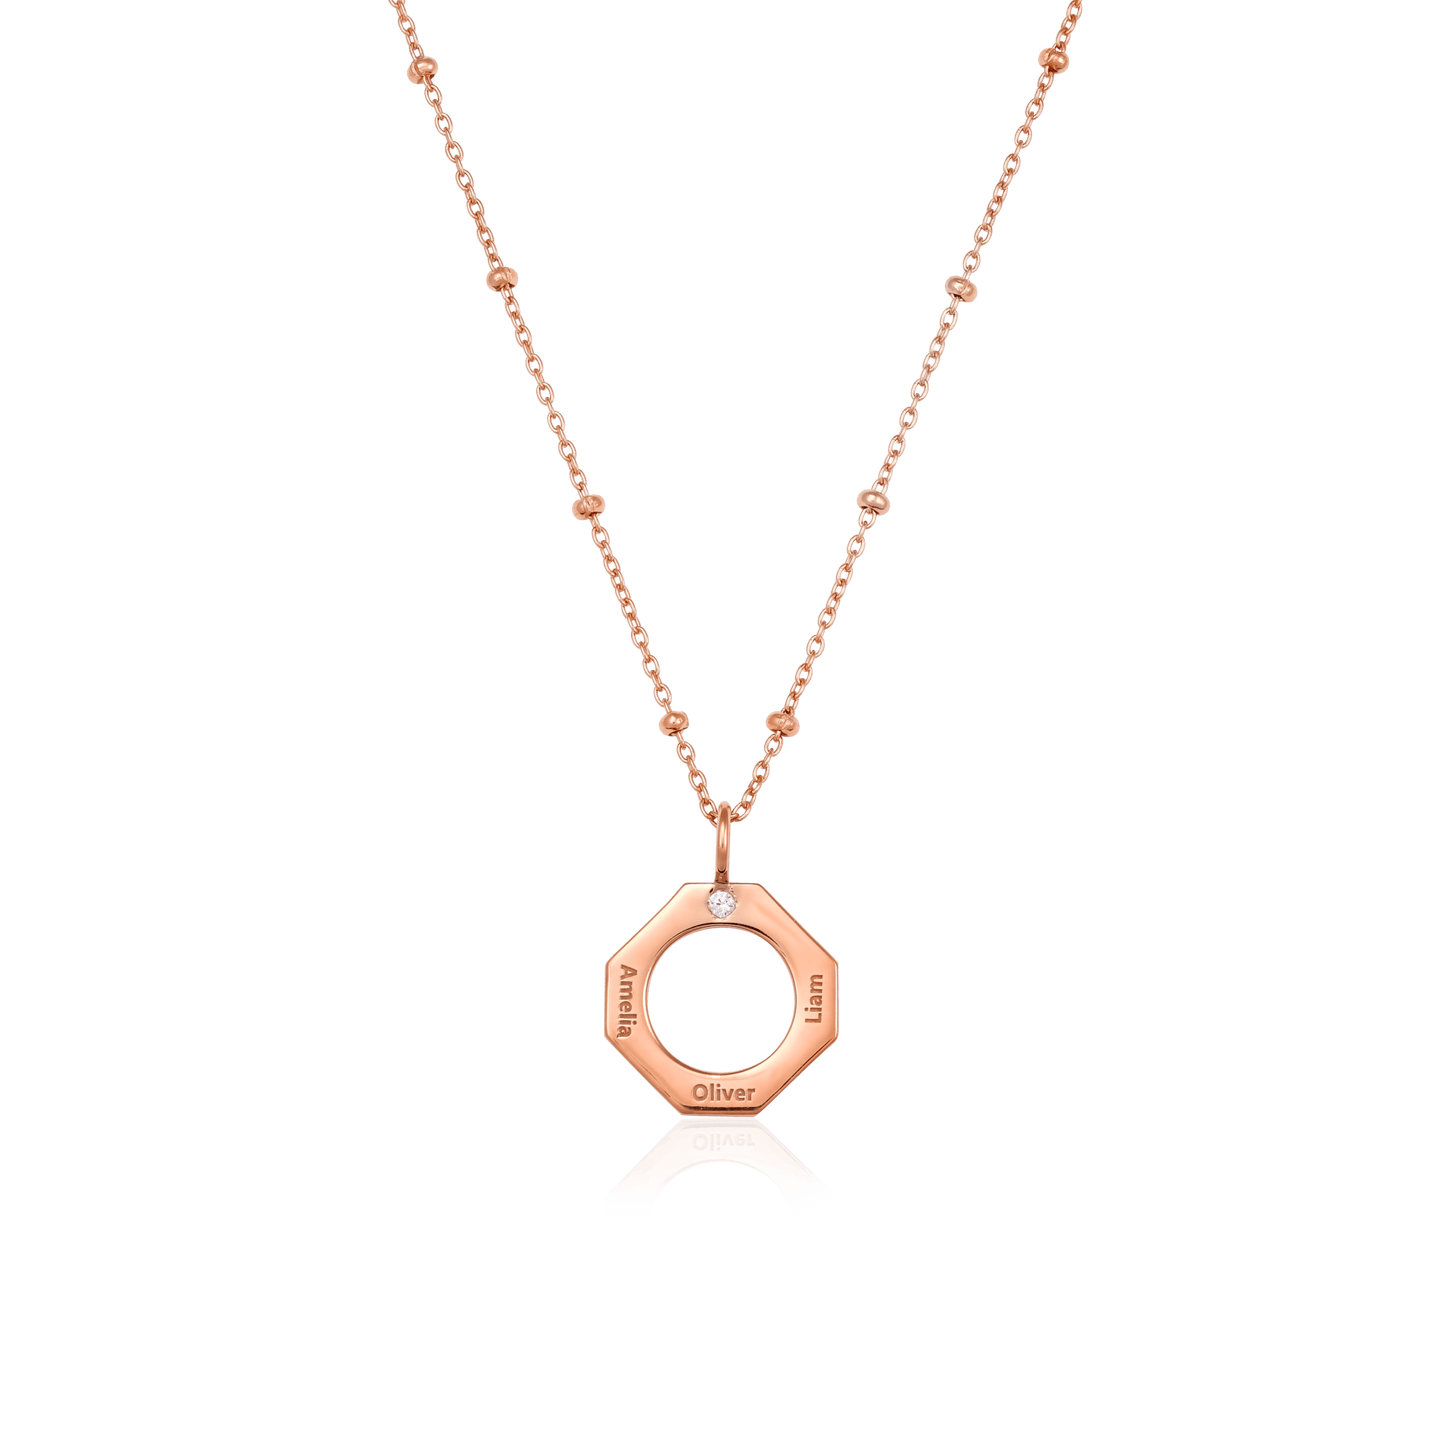 Geo Necklace - 18K Gold Vermeil Necklaces Gold Vermeil 